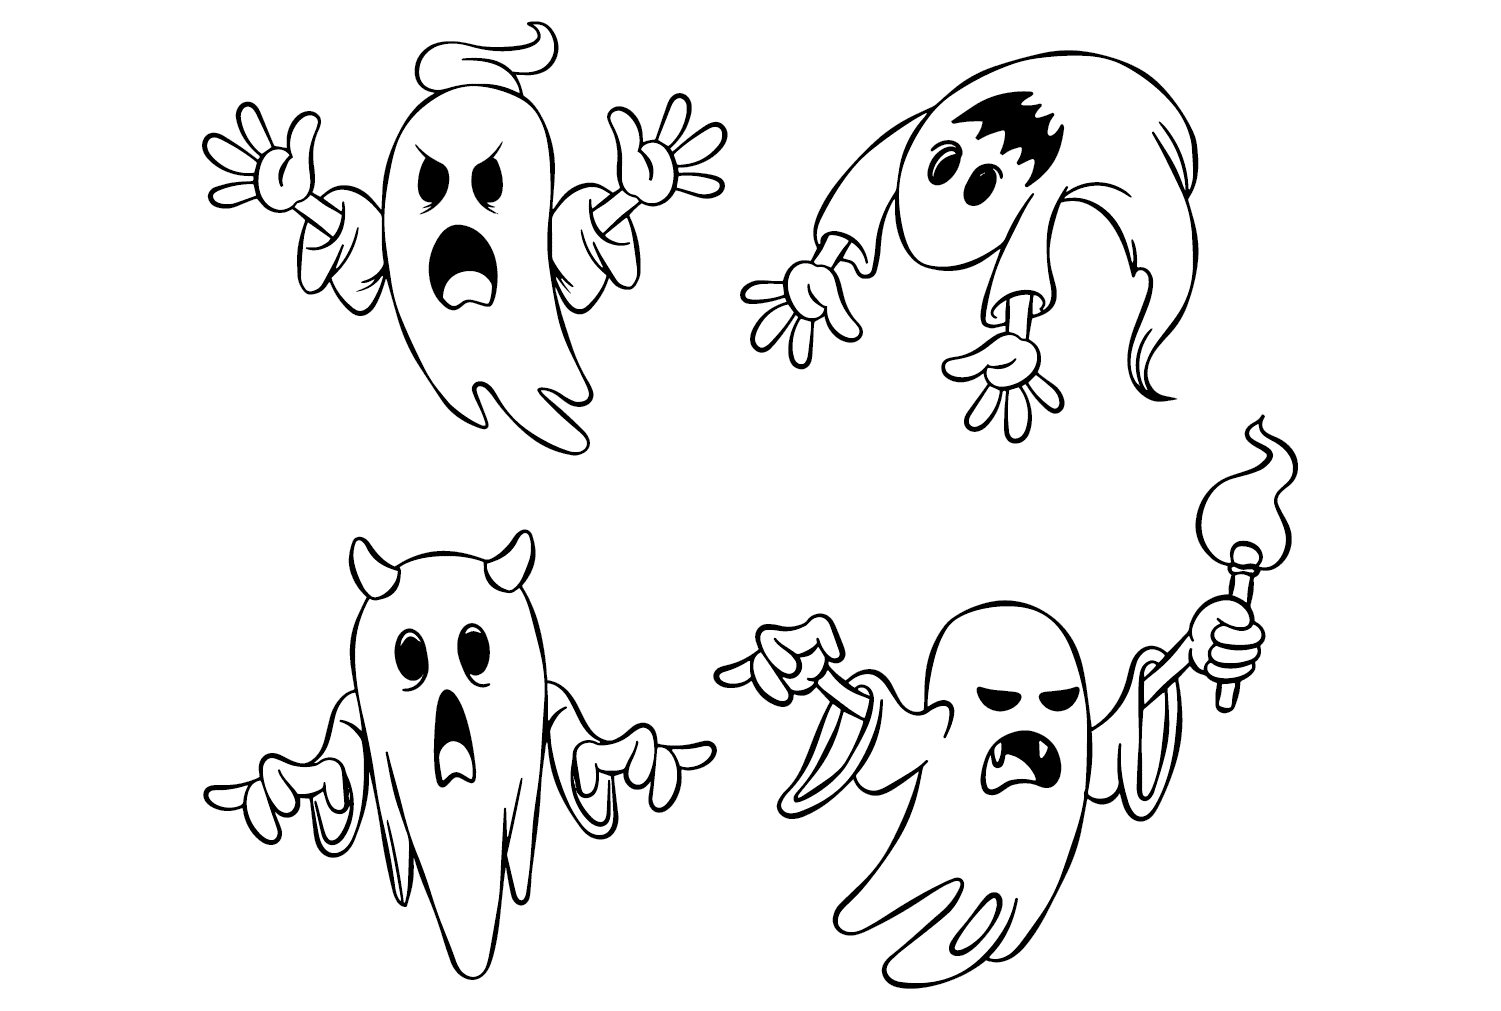 Páginas para colorear de fantasmas para imprimir desde Ghost